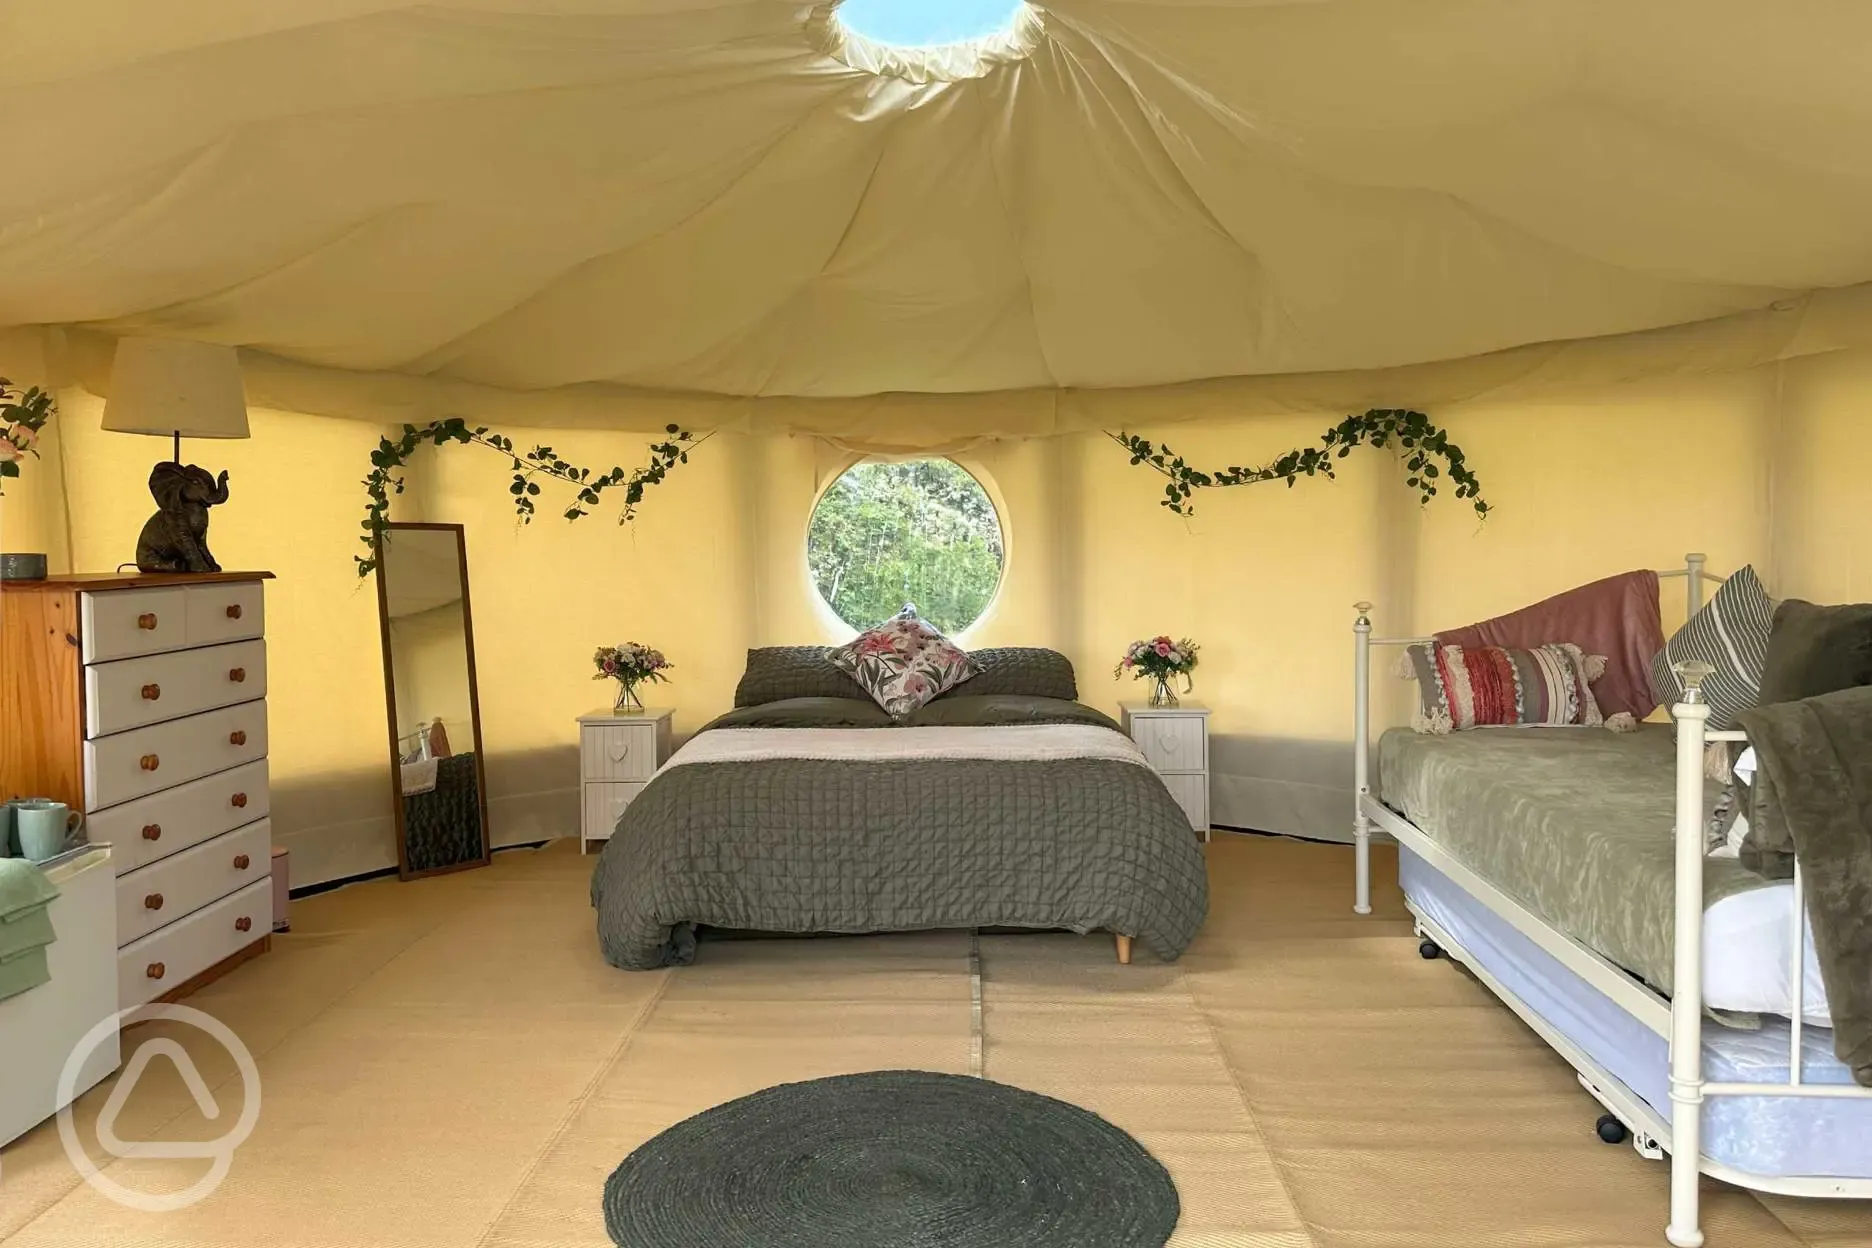 Willow yurt interior